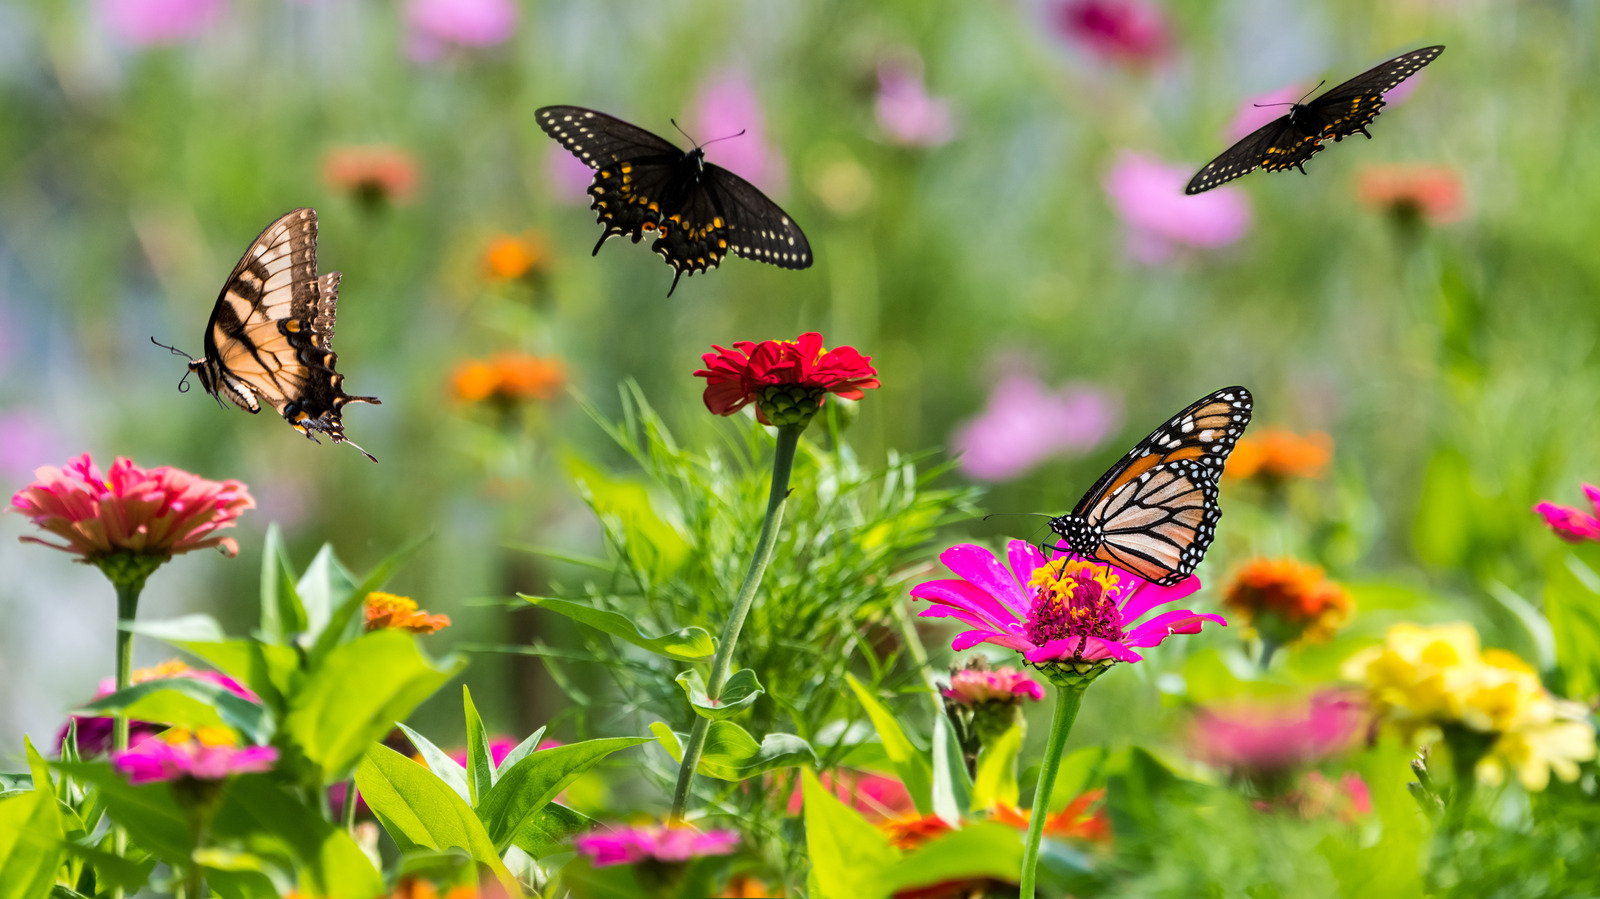 Garden Rock Kit - Monarch Butterfly